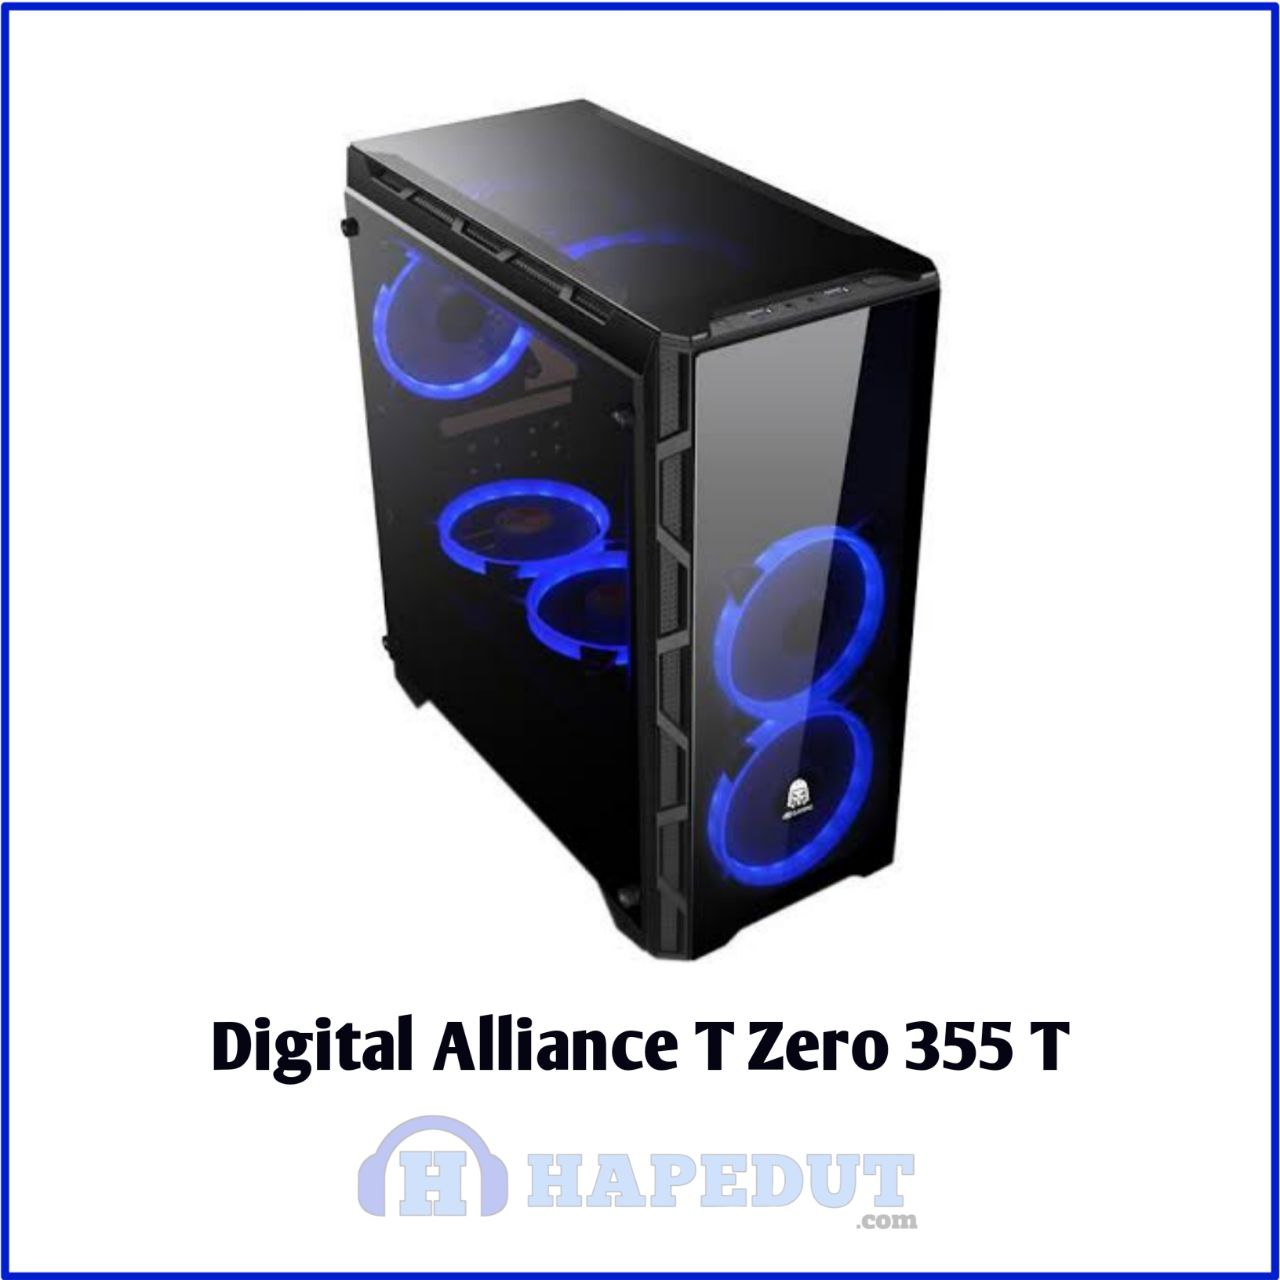 Digital Alliance T Zero 355 Ti : Hapedut